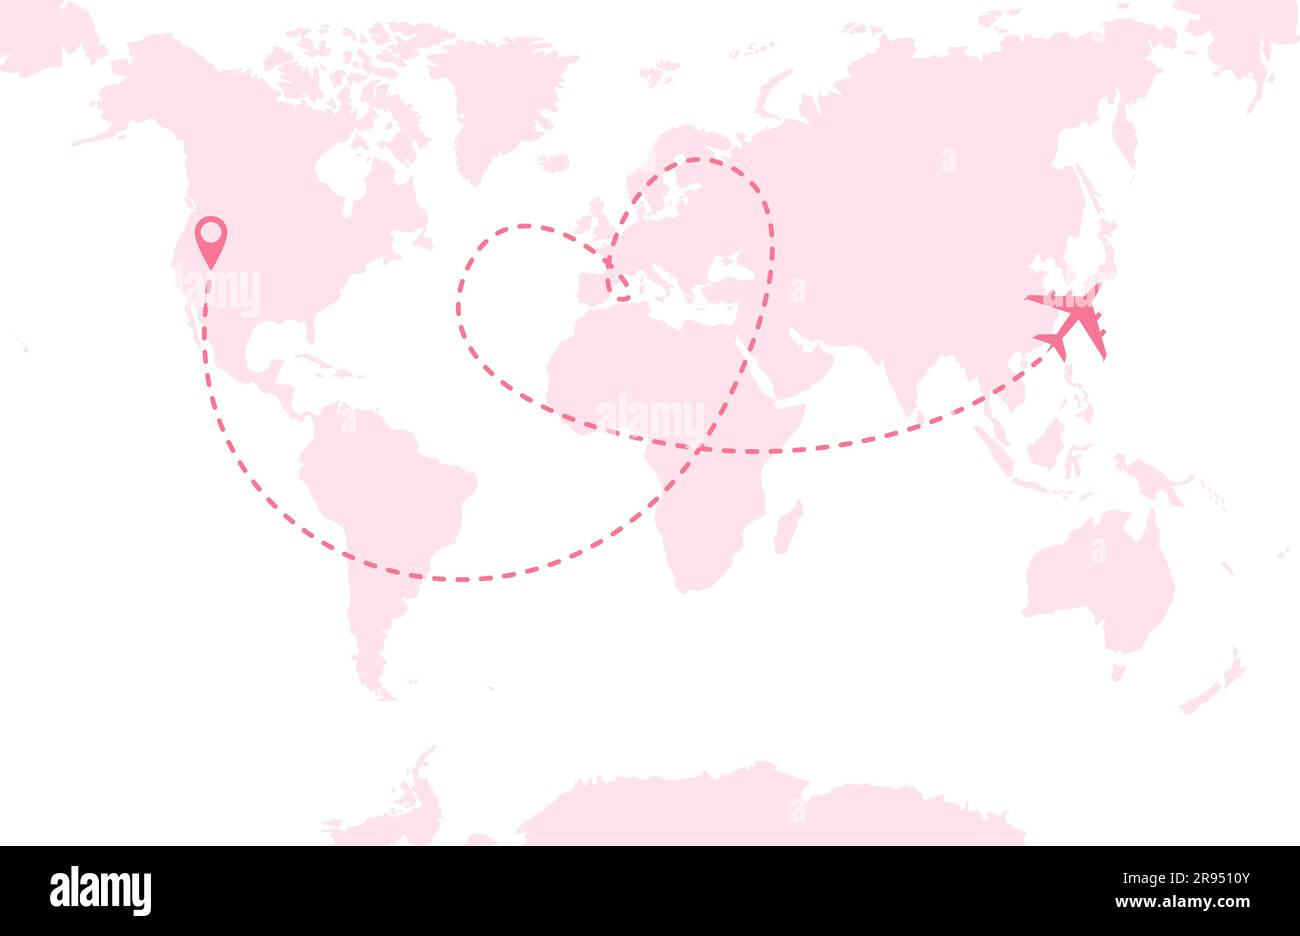 Un avion rose survolant une carte du monde rose. Ligne d'itinéraire en pointillés sous forme de cœur. Illustration vectorielle Illustration de Vecteur